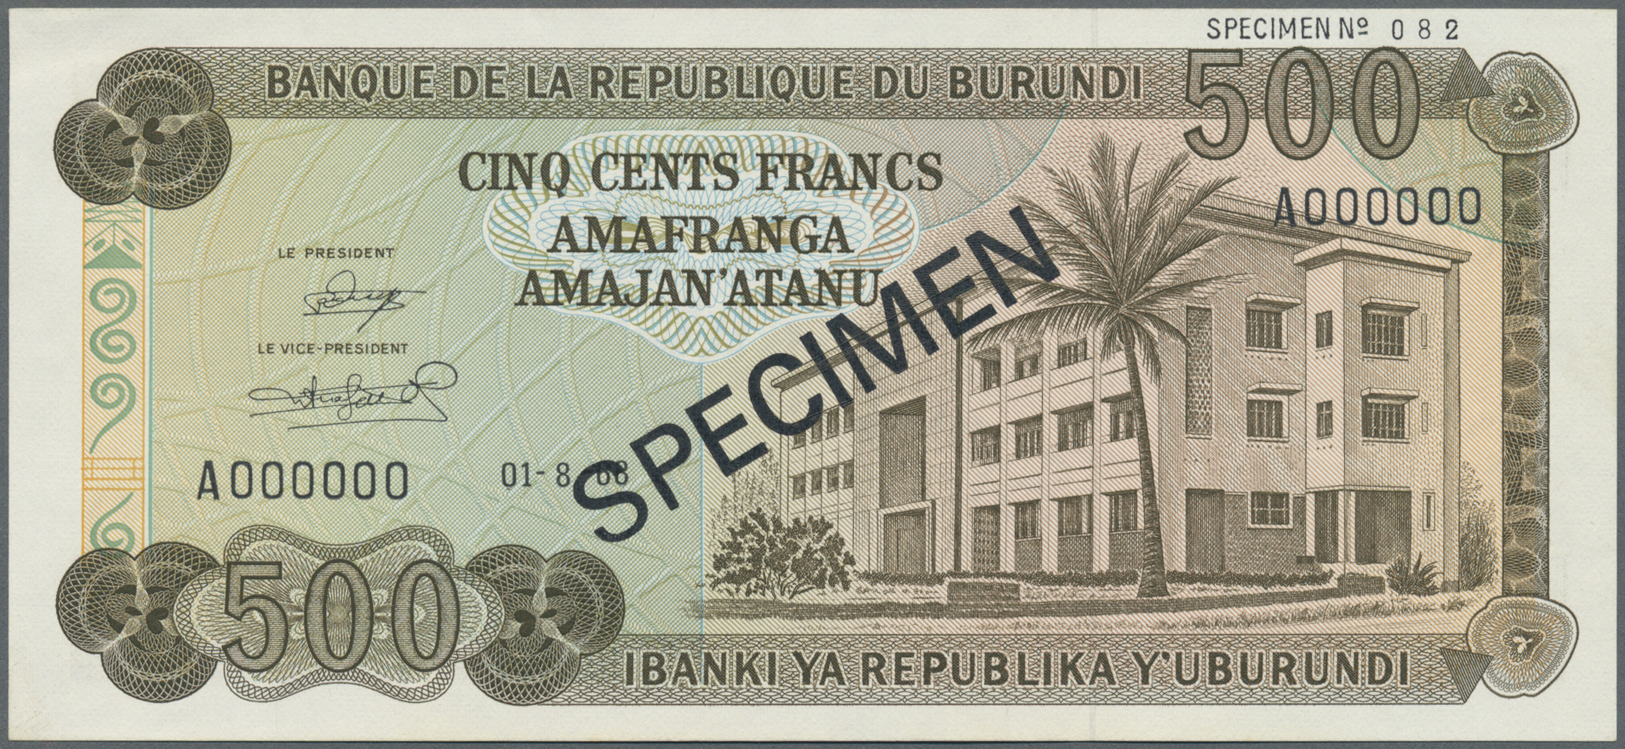 00450 Burundi: 500 Francs 1968 Specimen P. 24As In Condition: UNC. - Burundi